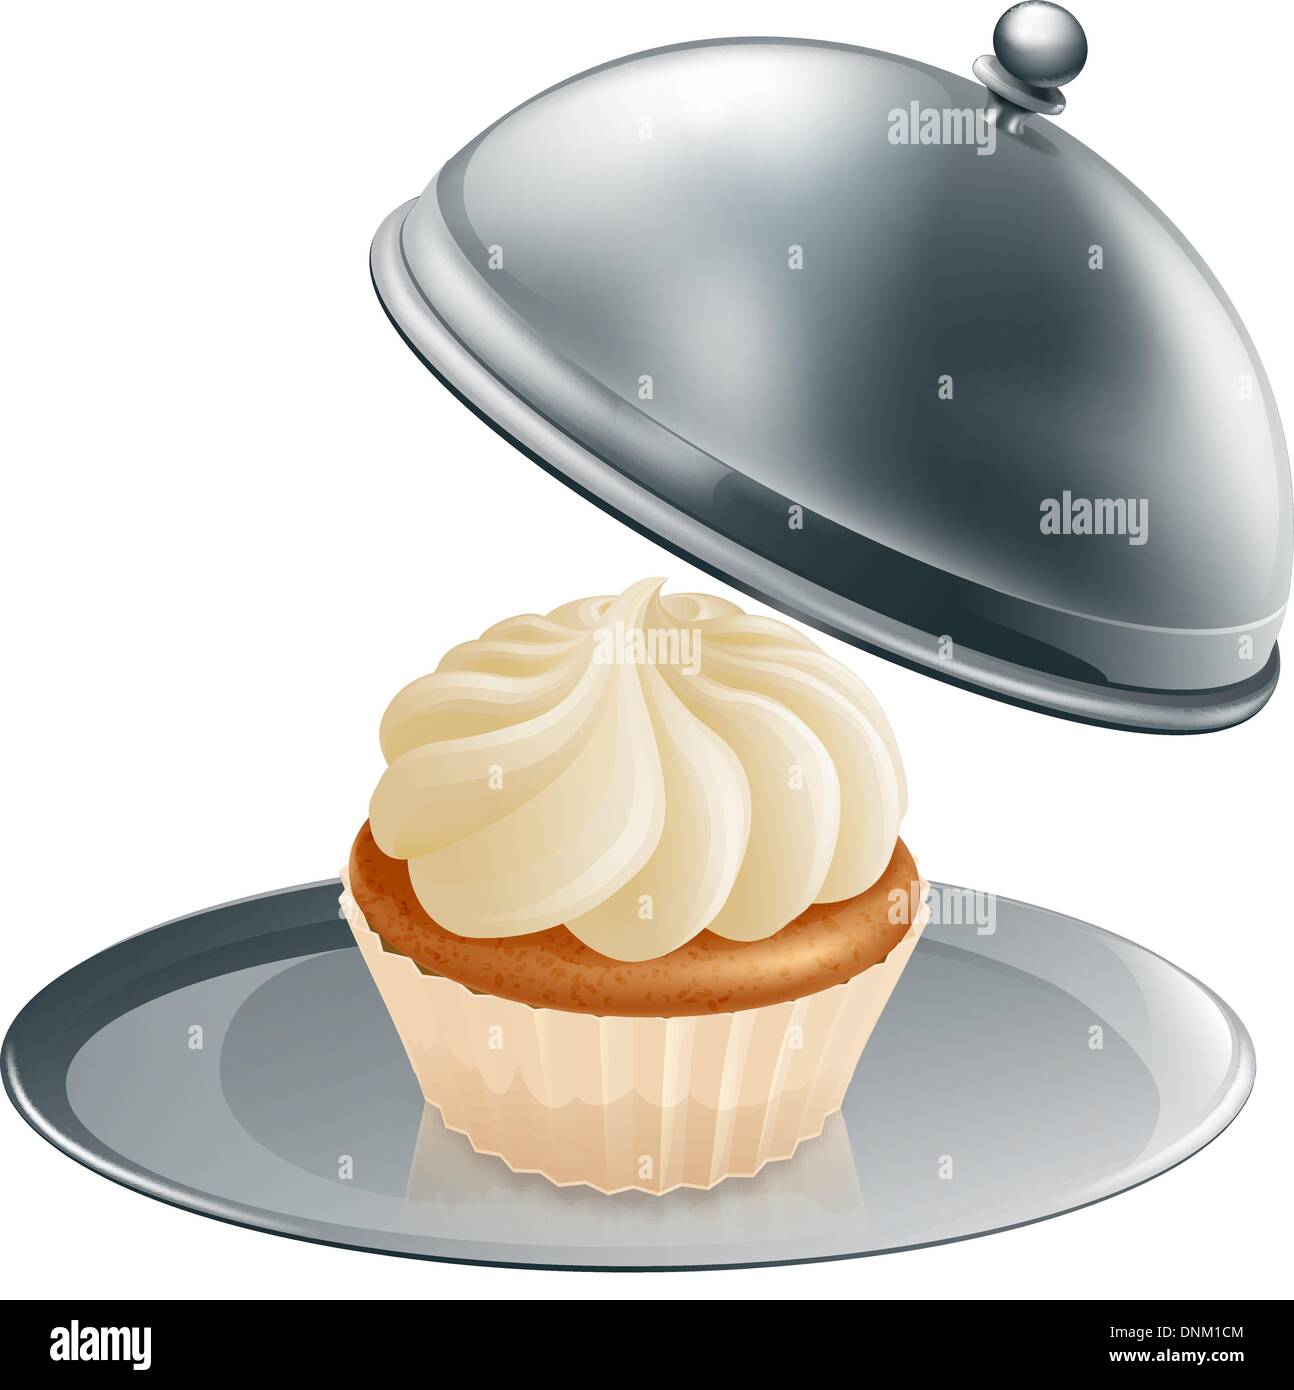 Un petit gâteau ou un muffin sur un plateau d'argent, le concept pourrait être pour la pâtisserie gastronomique ou un traitement spécial pendant un régime. Illustration de Vecteur